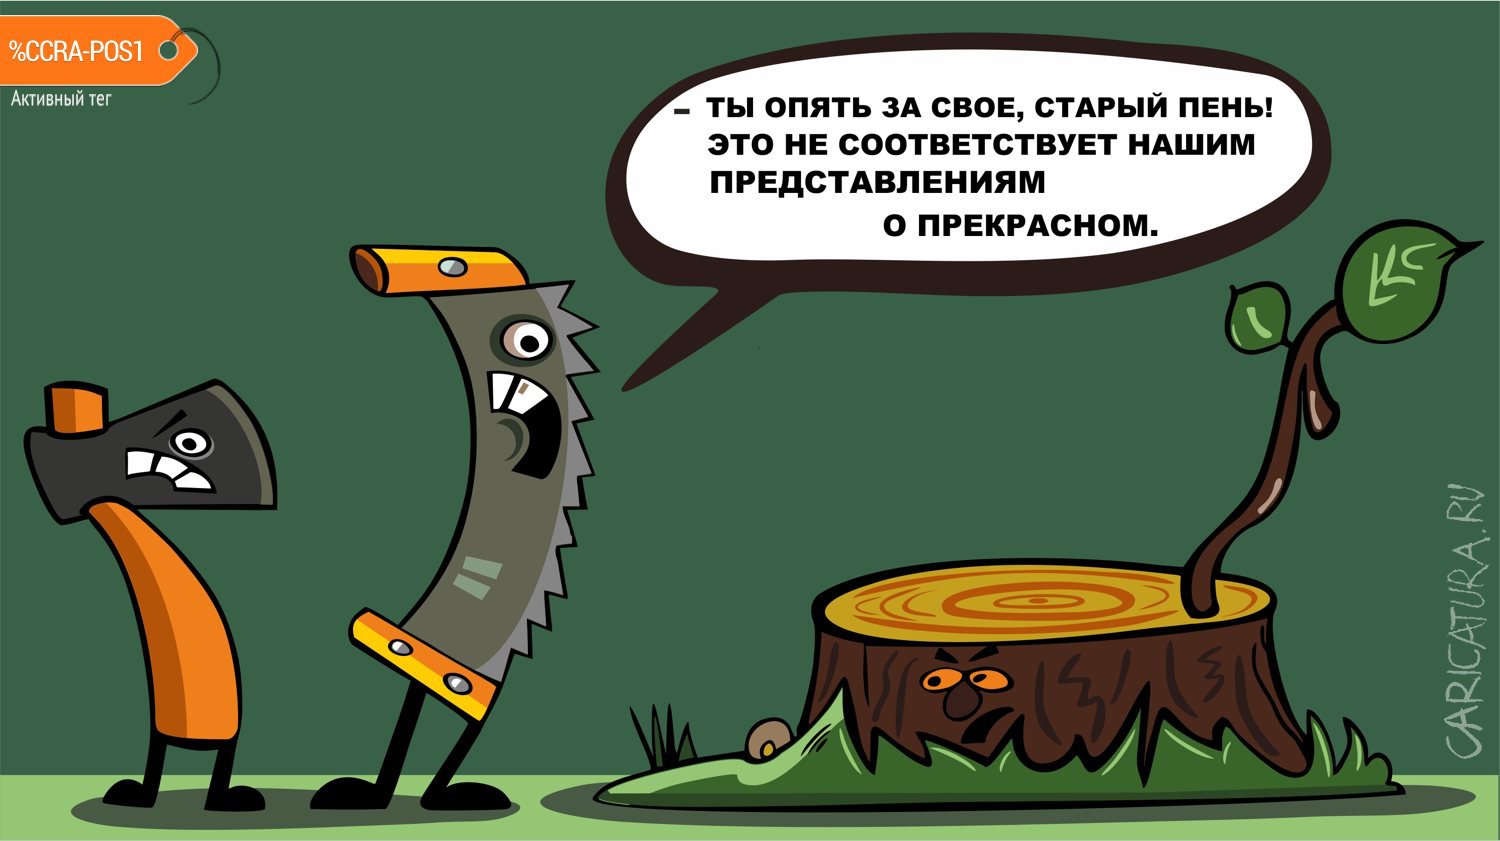 Карикатура "Старый пень", Евгений Коровкин